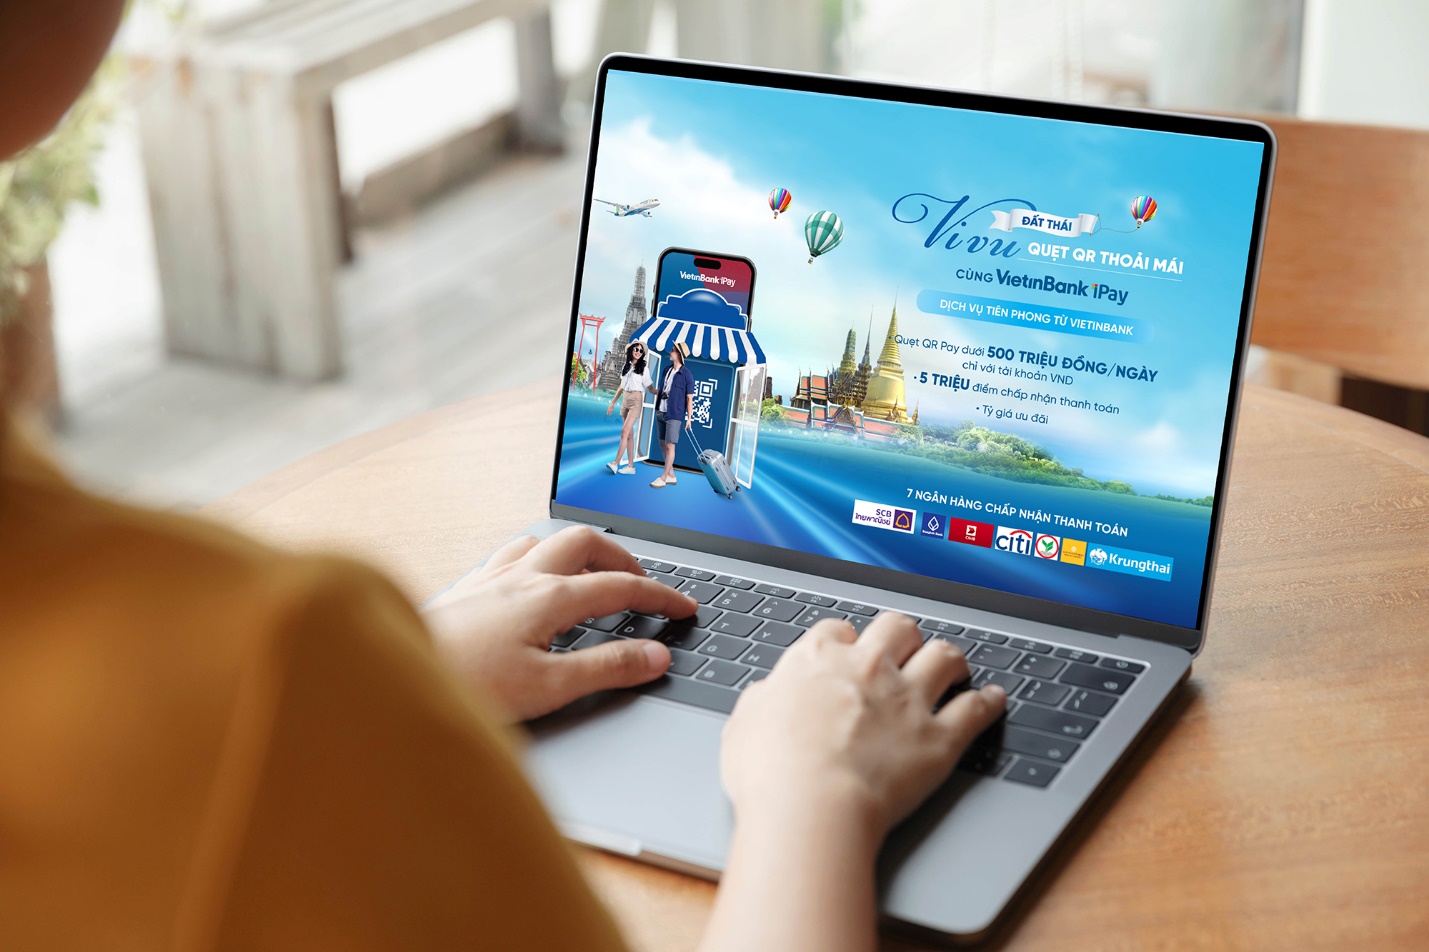 VietinBank triển khai dịch vụ thanh toán cho khách du lịch Thái Lan - Ảnh 1.